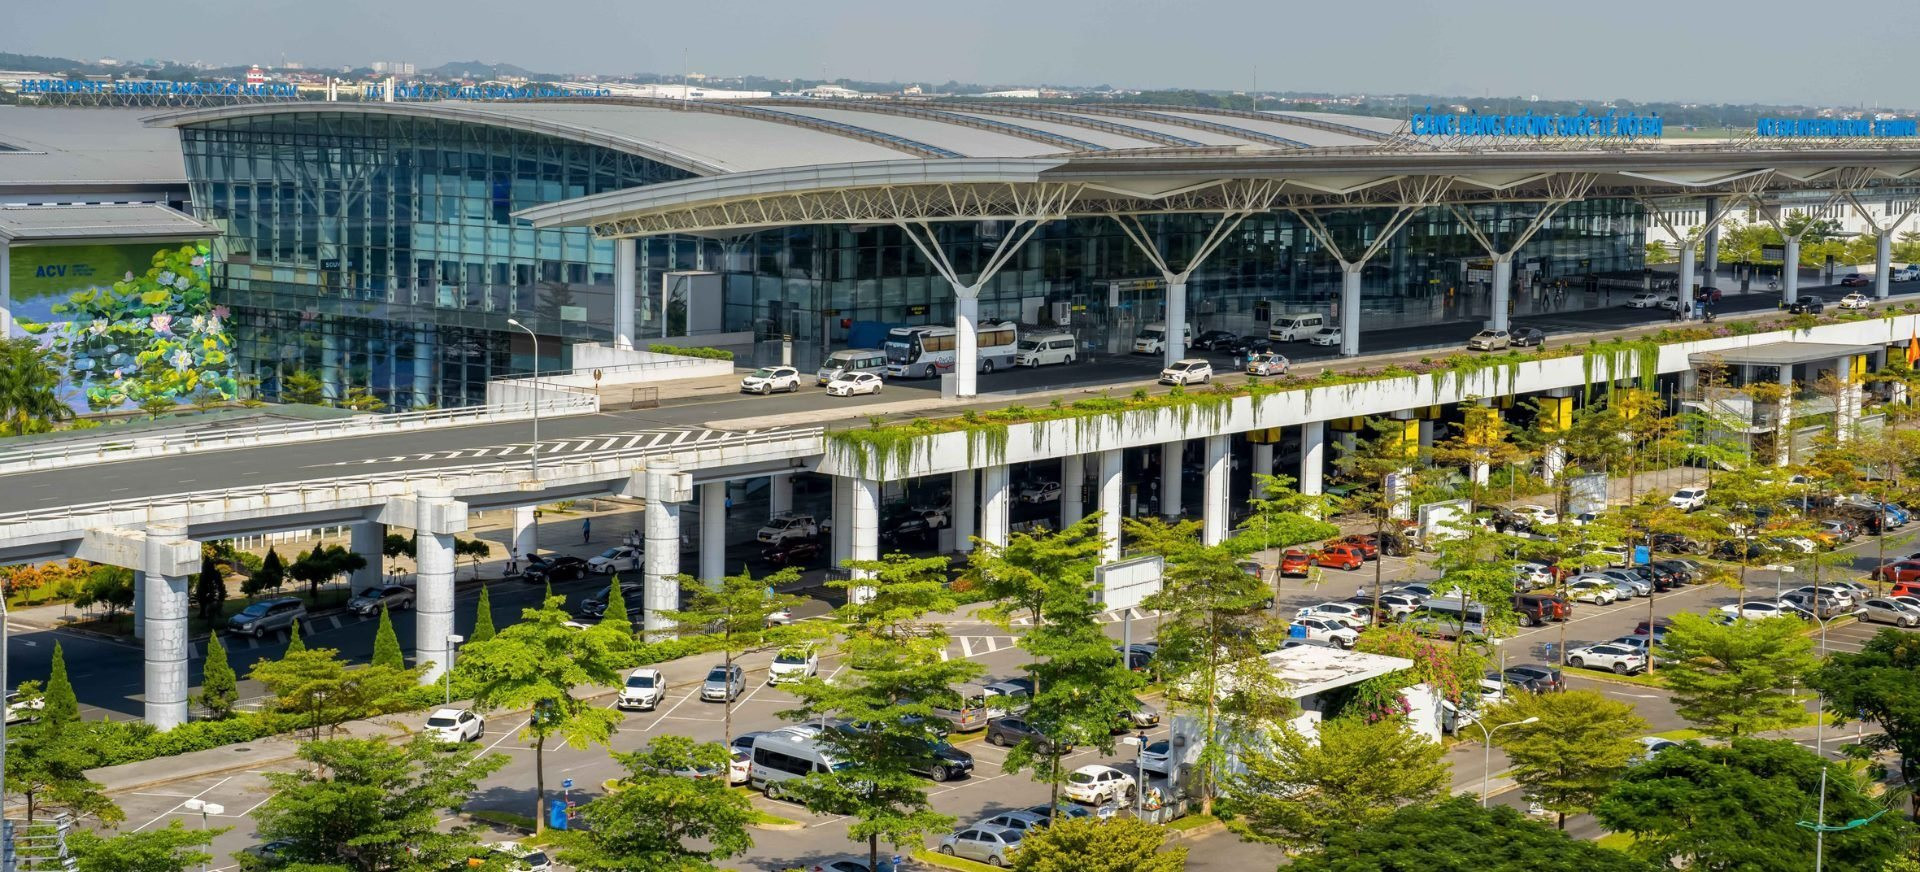 Sắp mở rộng nhà ga quốc tế T2 sân bay Nội Bài